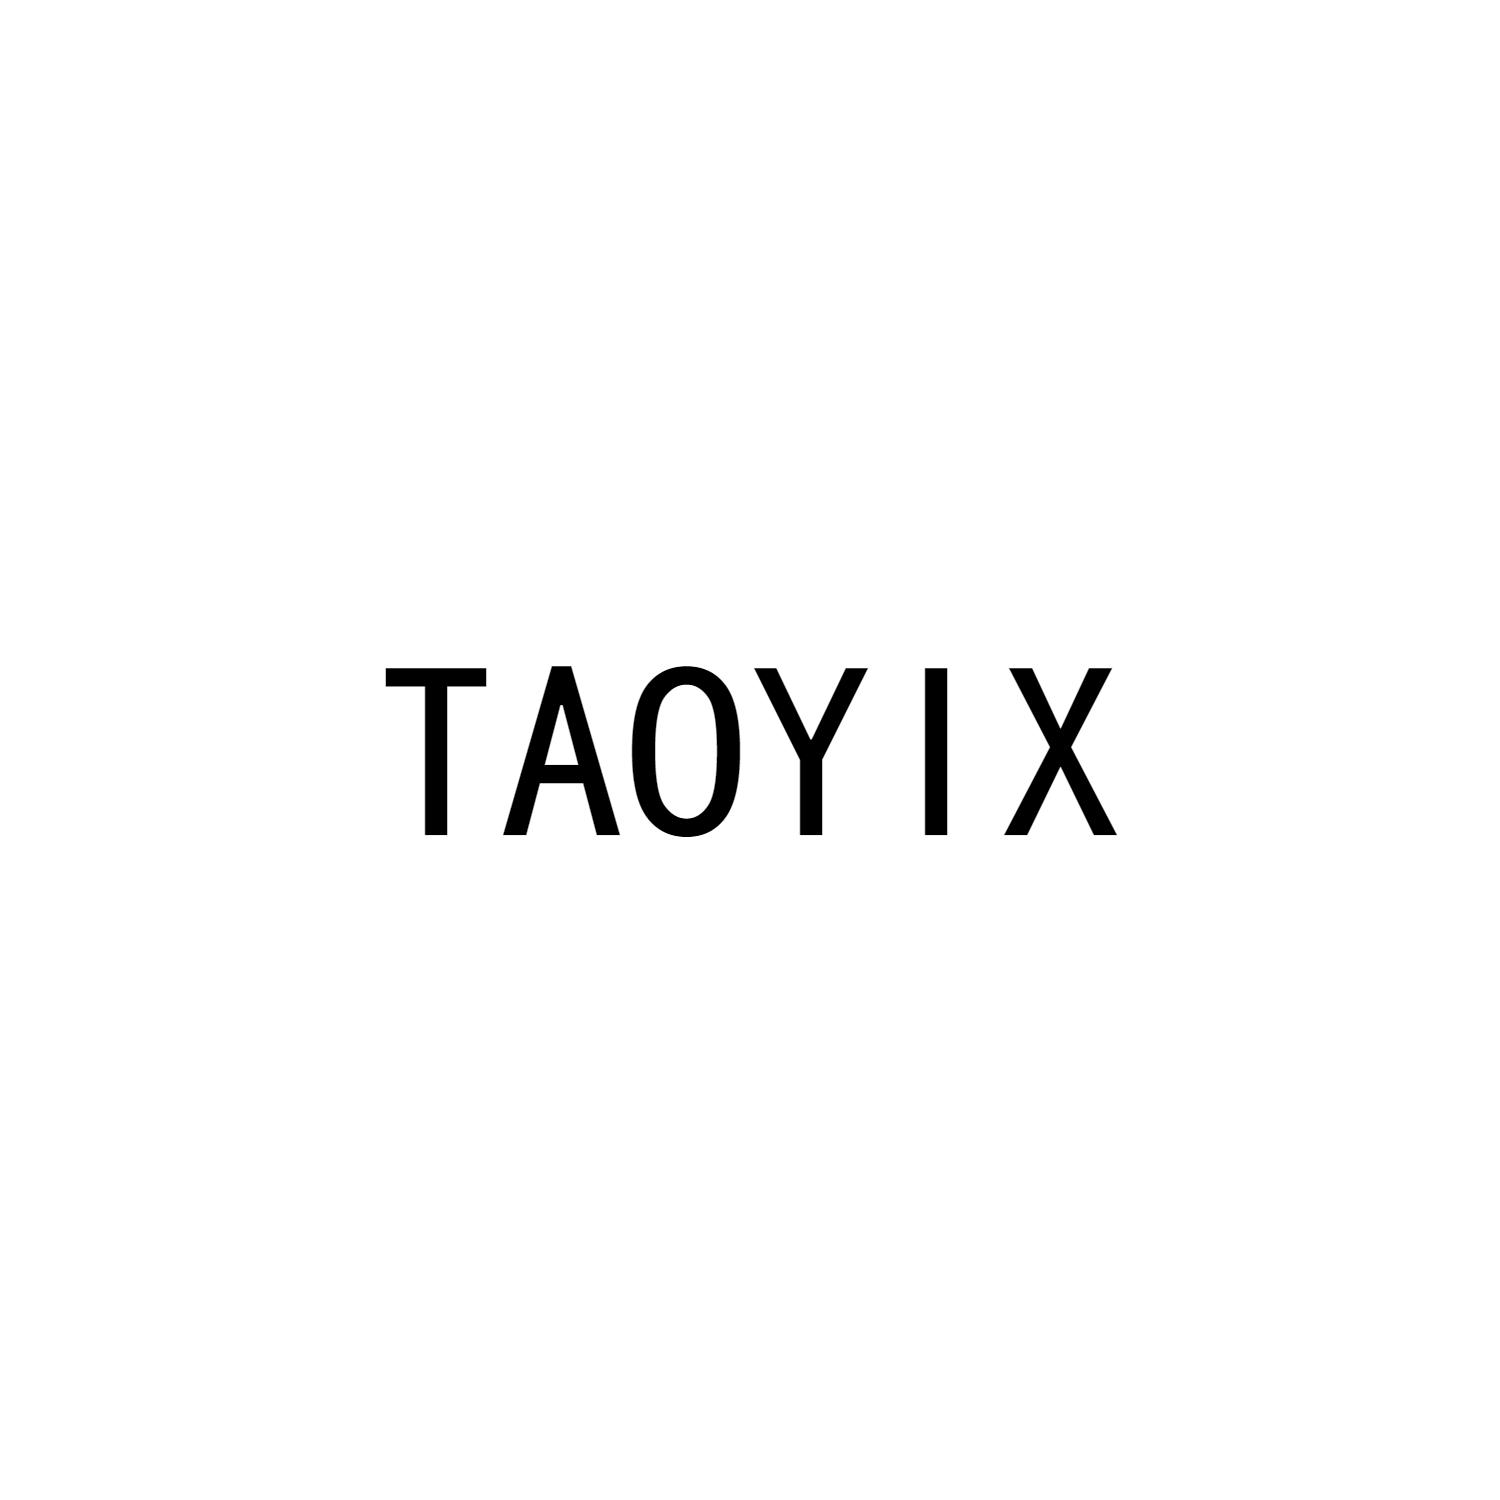 TAOYIX